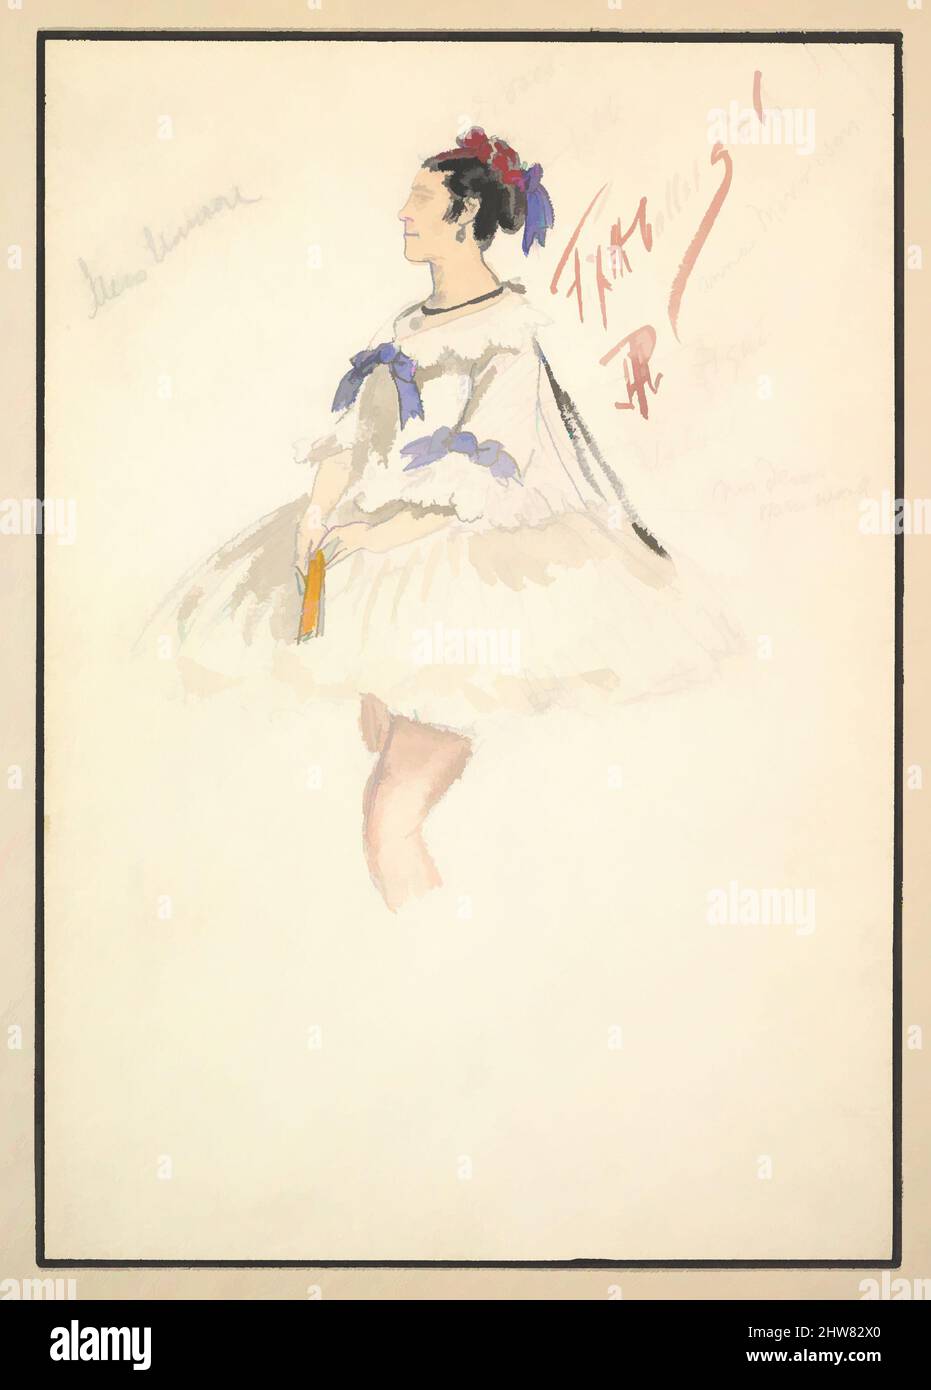 Arte ispirata al Costume Design per "Fifth Ballet Girl" (abito bianco corto), 1901, Watercolours su grafite, Monte: 11 1/16 x 8 1/8 poll. (28,1 x 20,6 cm), Percy Anderson (British, 1850/51–1928 London), Design per il costume di 'Fifth Ballet Girl' per il gioco 'Captain Jinks of the, opere classiche modernizzate da Artotop con un tuffo di modernità. Forme, colore e valore, impatto visivo accattivante sulle emozioni artistiche attraverso la libertà delle opere d'arte in modo contemporaneo. Un messaggio senza tempo che persegue una nuova direzione selvaggiamente creativa. Artisti che si rivolgono al supporto digitale e creano l'NFT Artotop Foto Stock